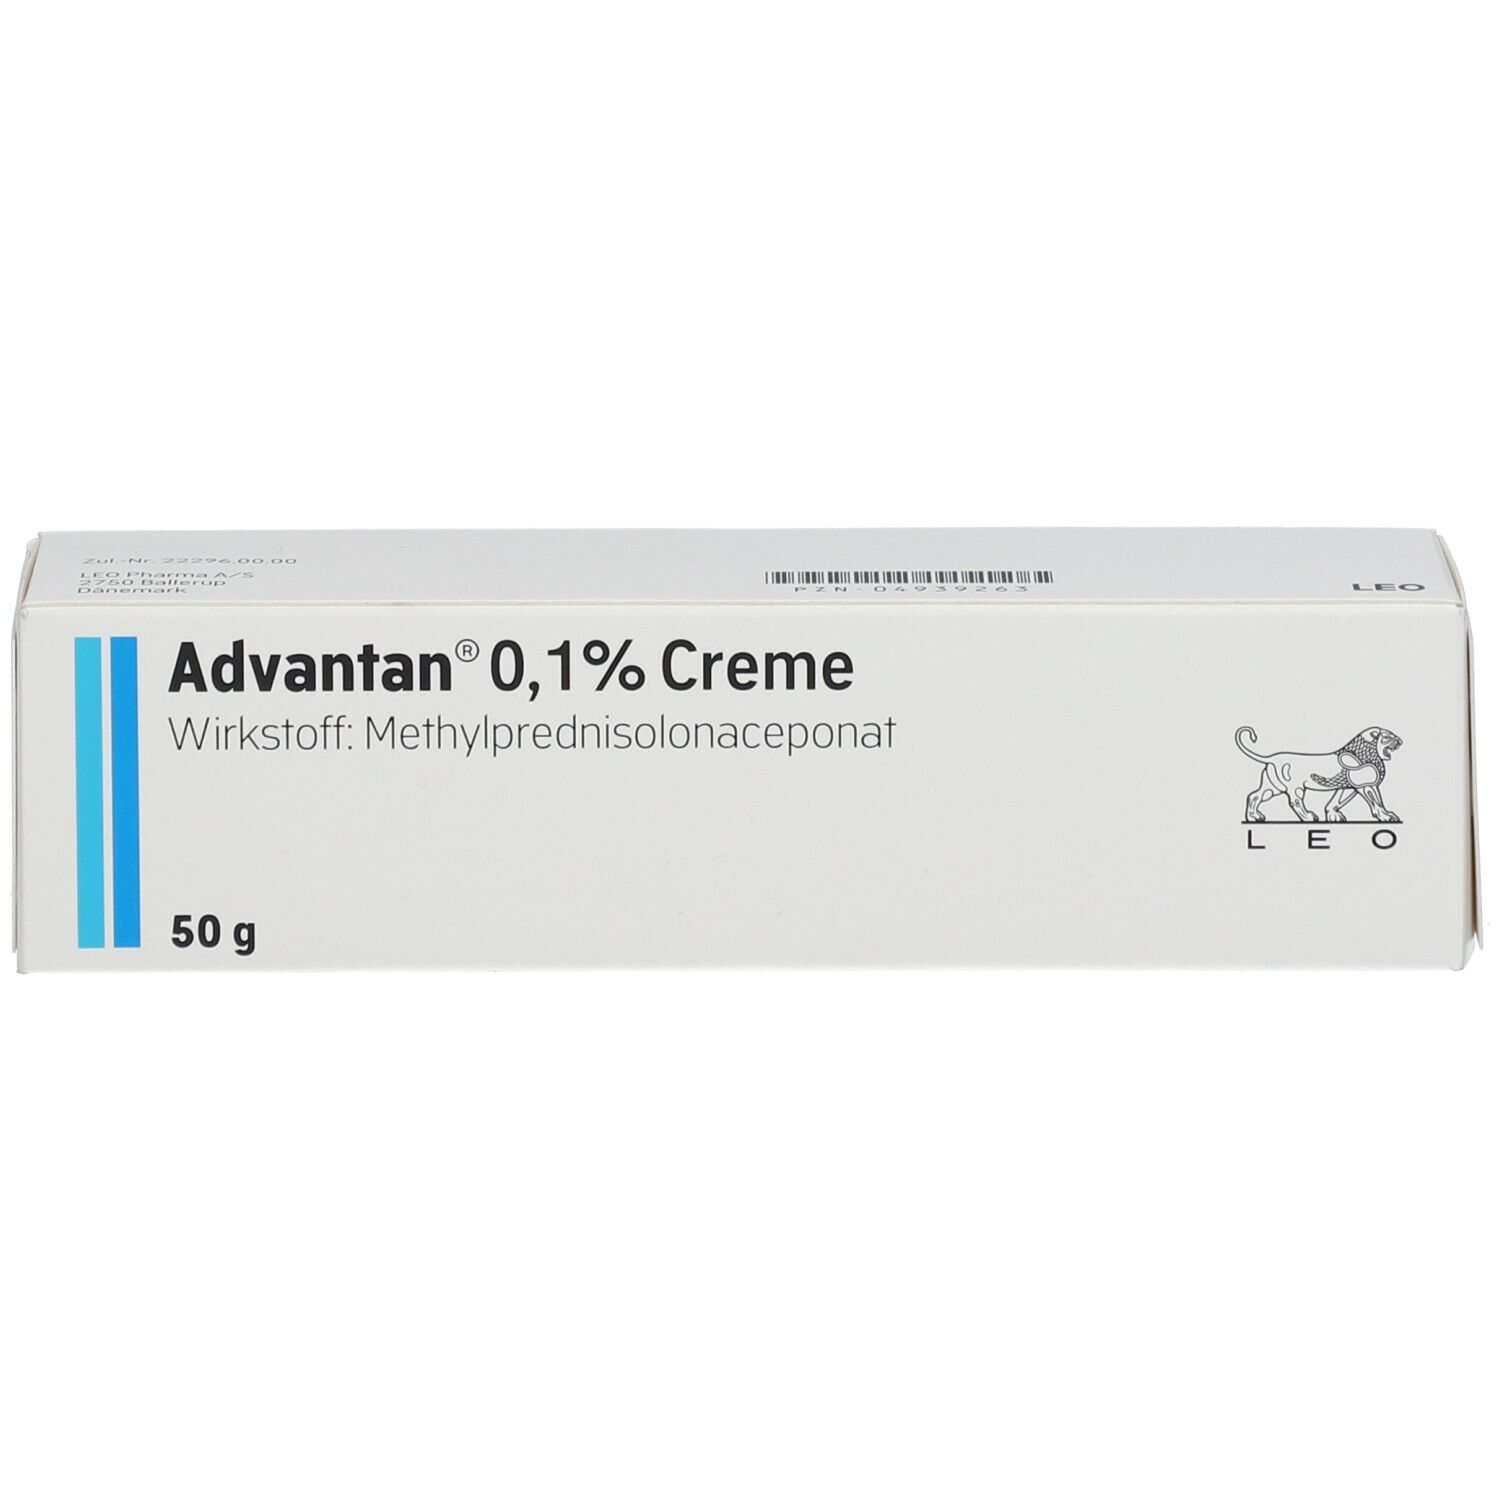 Advantan® 0,1% Creme